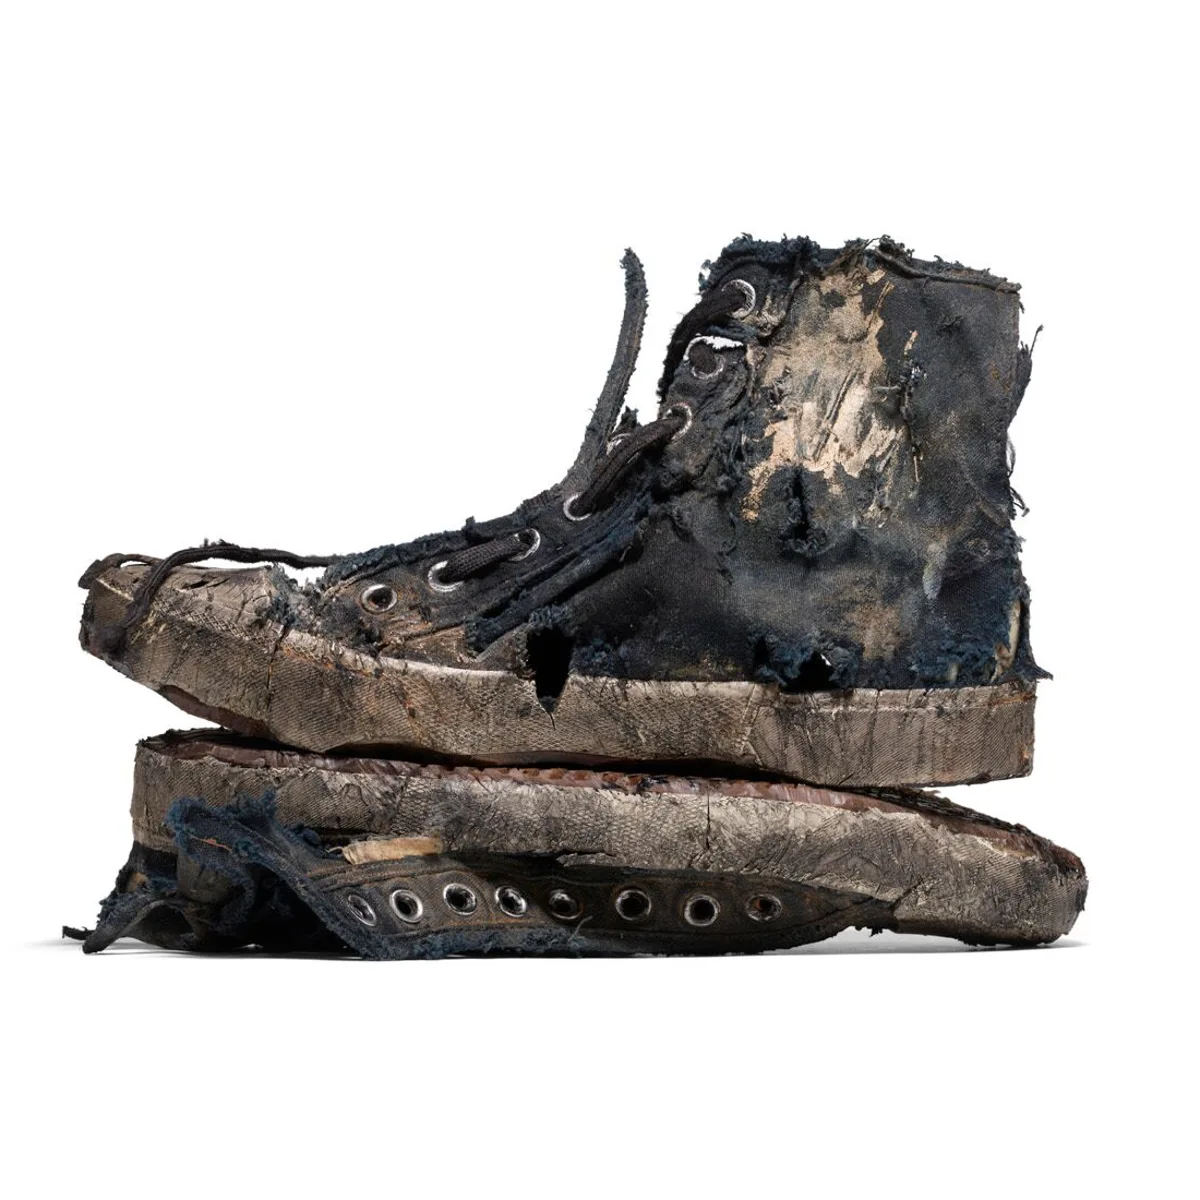 Balenciaga lanza zapatillas totalmente destrozadas 1.450 euros: ya están agotadas